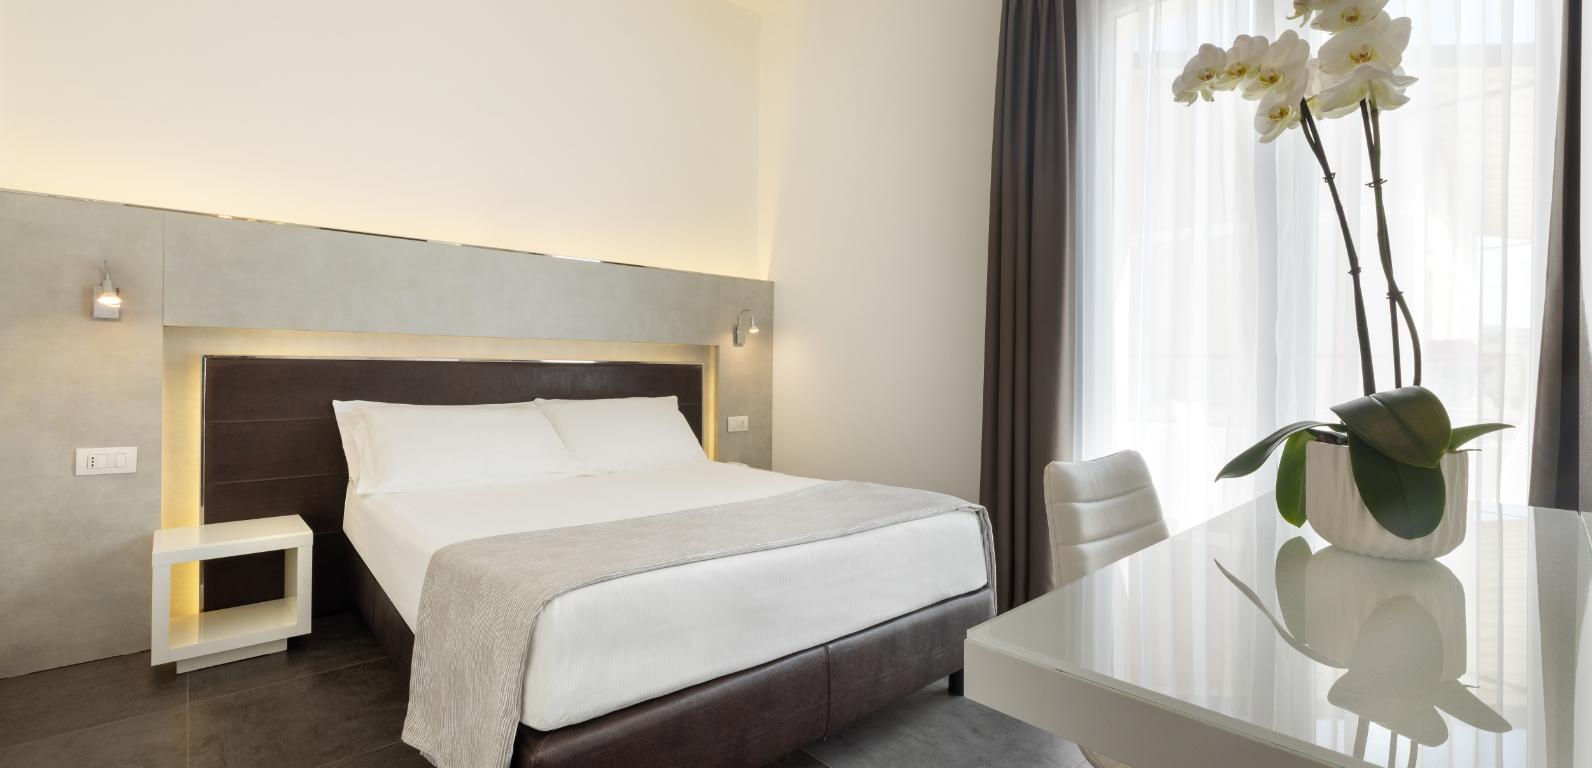 baldininihotel en relax-rooms-hotel-torre-pedrera 011